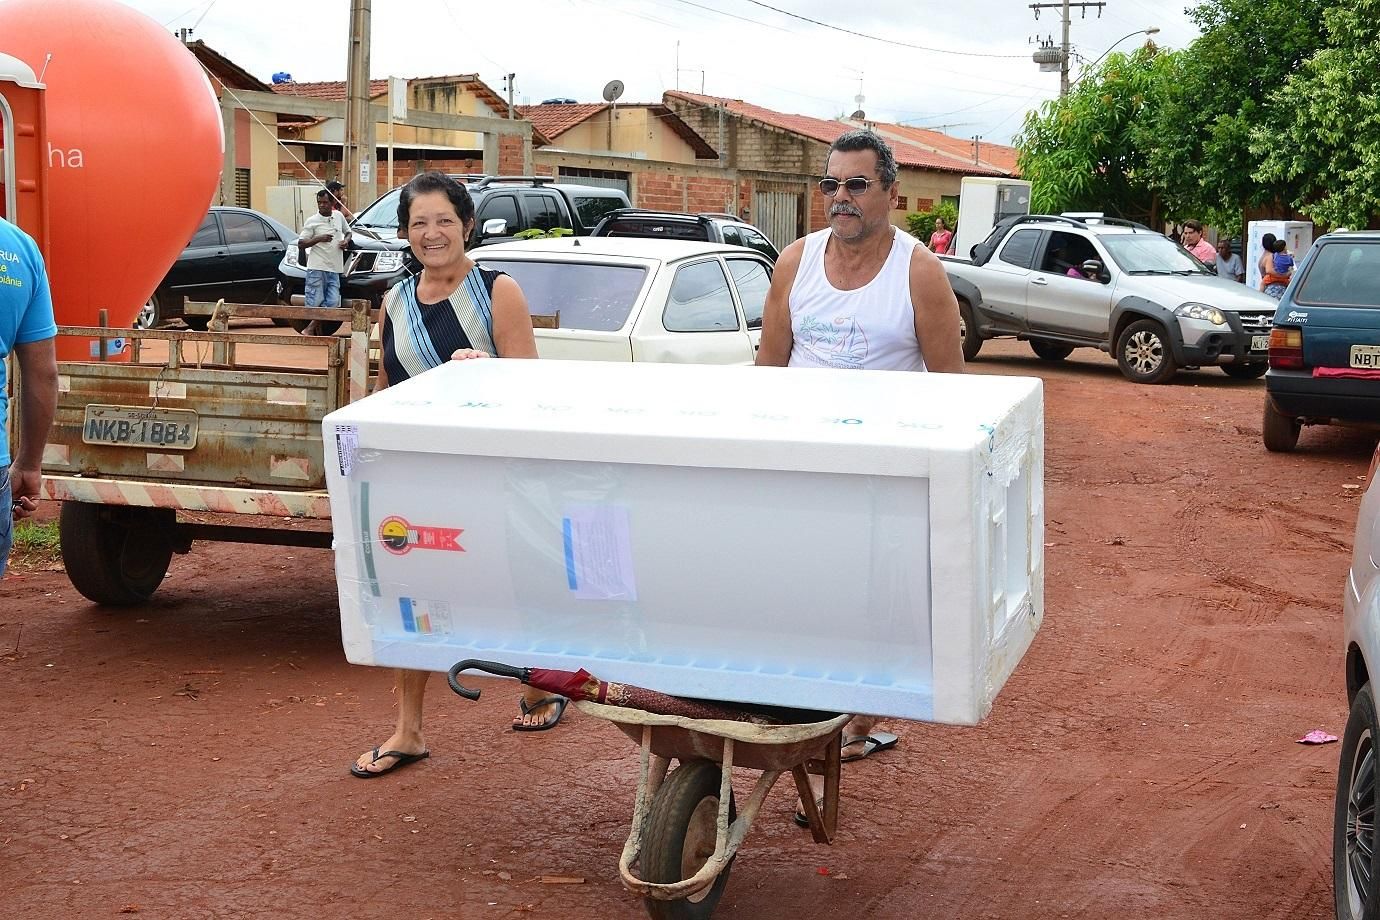 Queremos energia de qualidade”, diz governador sobre a venda da Enel Goiás  - Agência Cora Coralina de Notícias